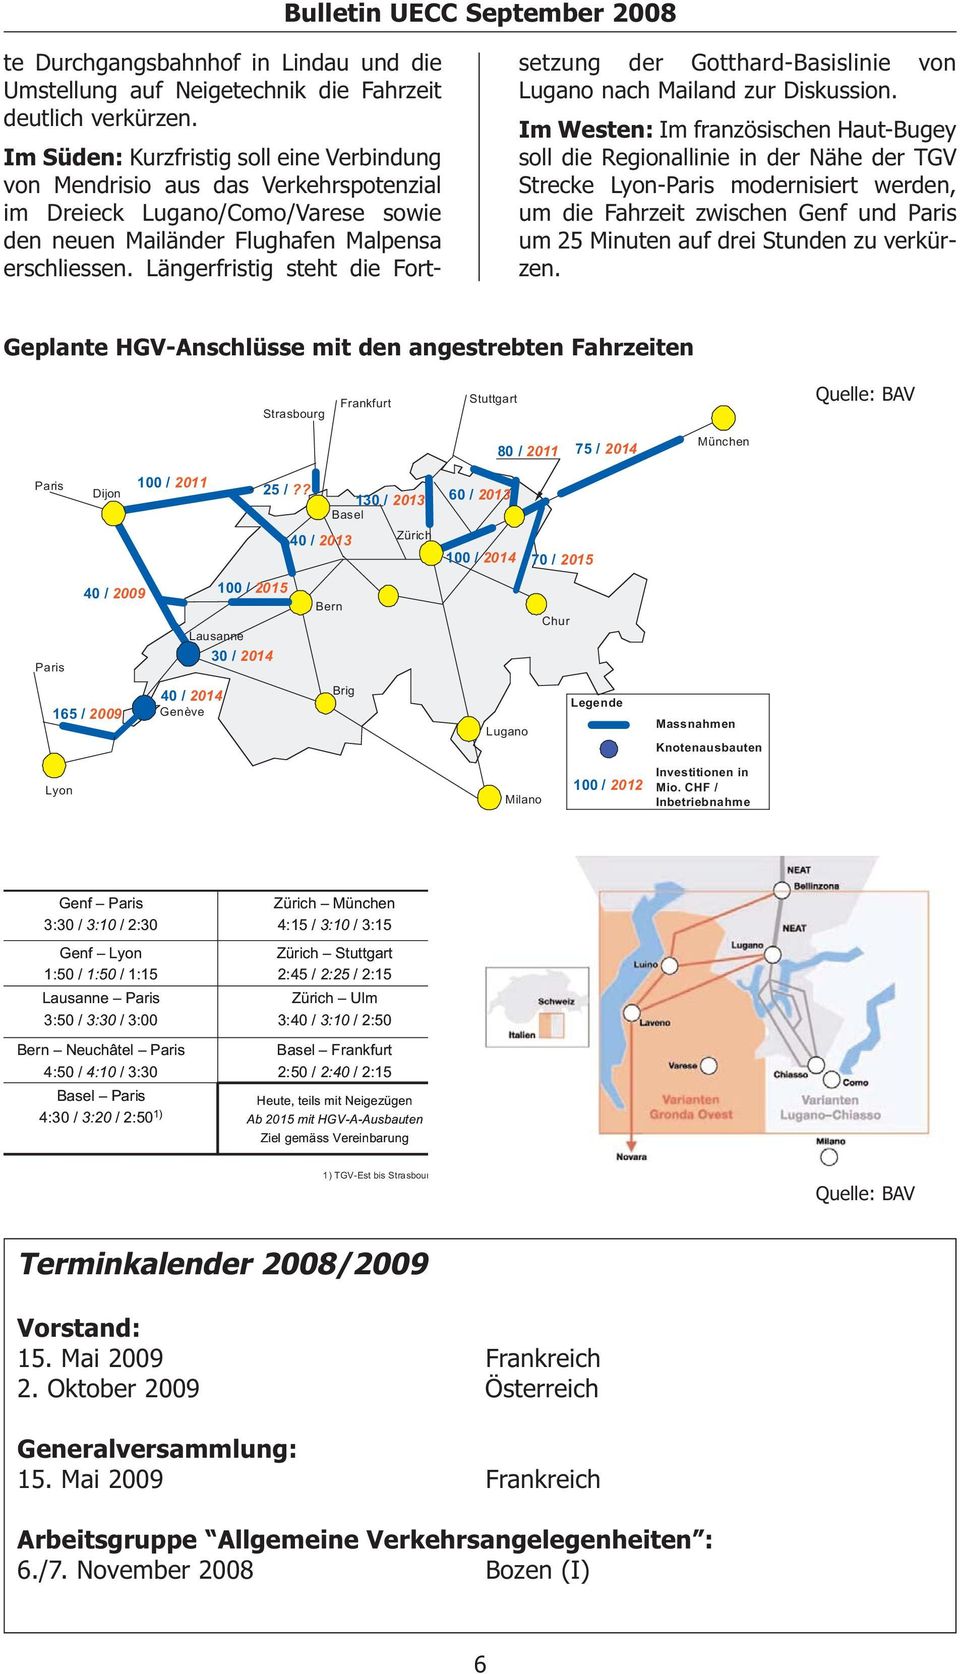 Längerfristig steht die Fortsetzung der Gotthard-Basislinie von Lugano nach Mailand zur Diskussion.